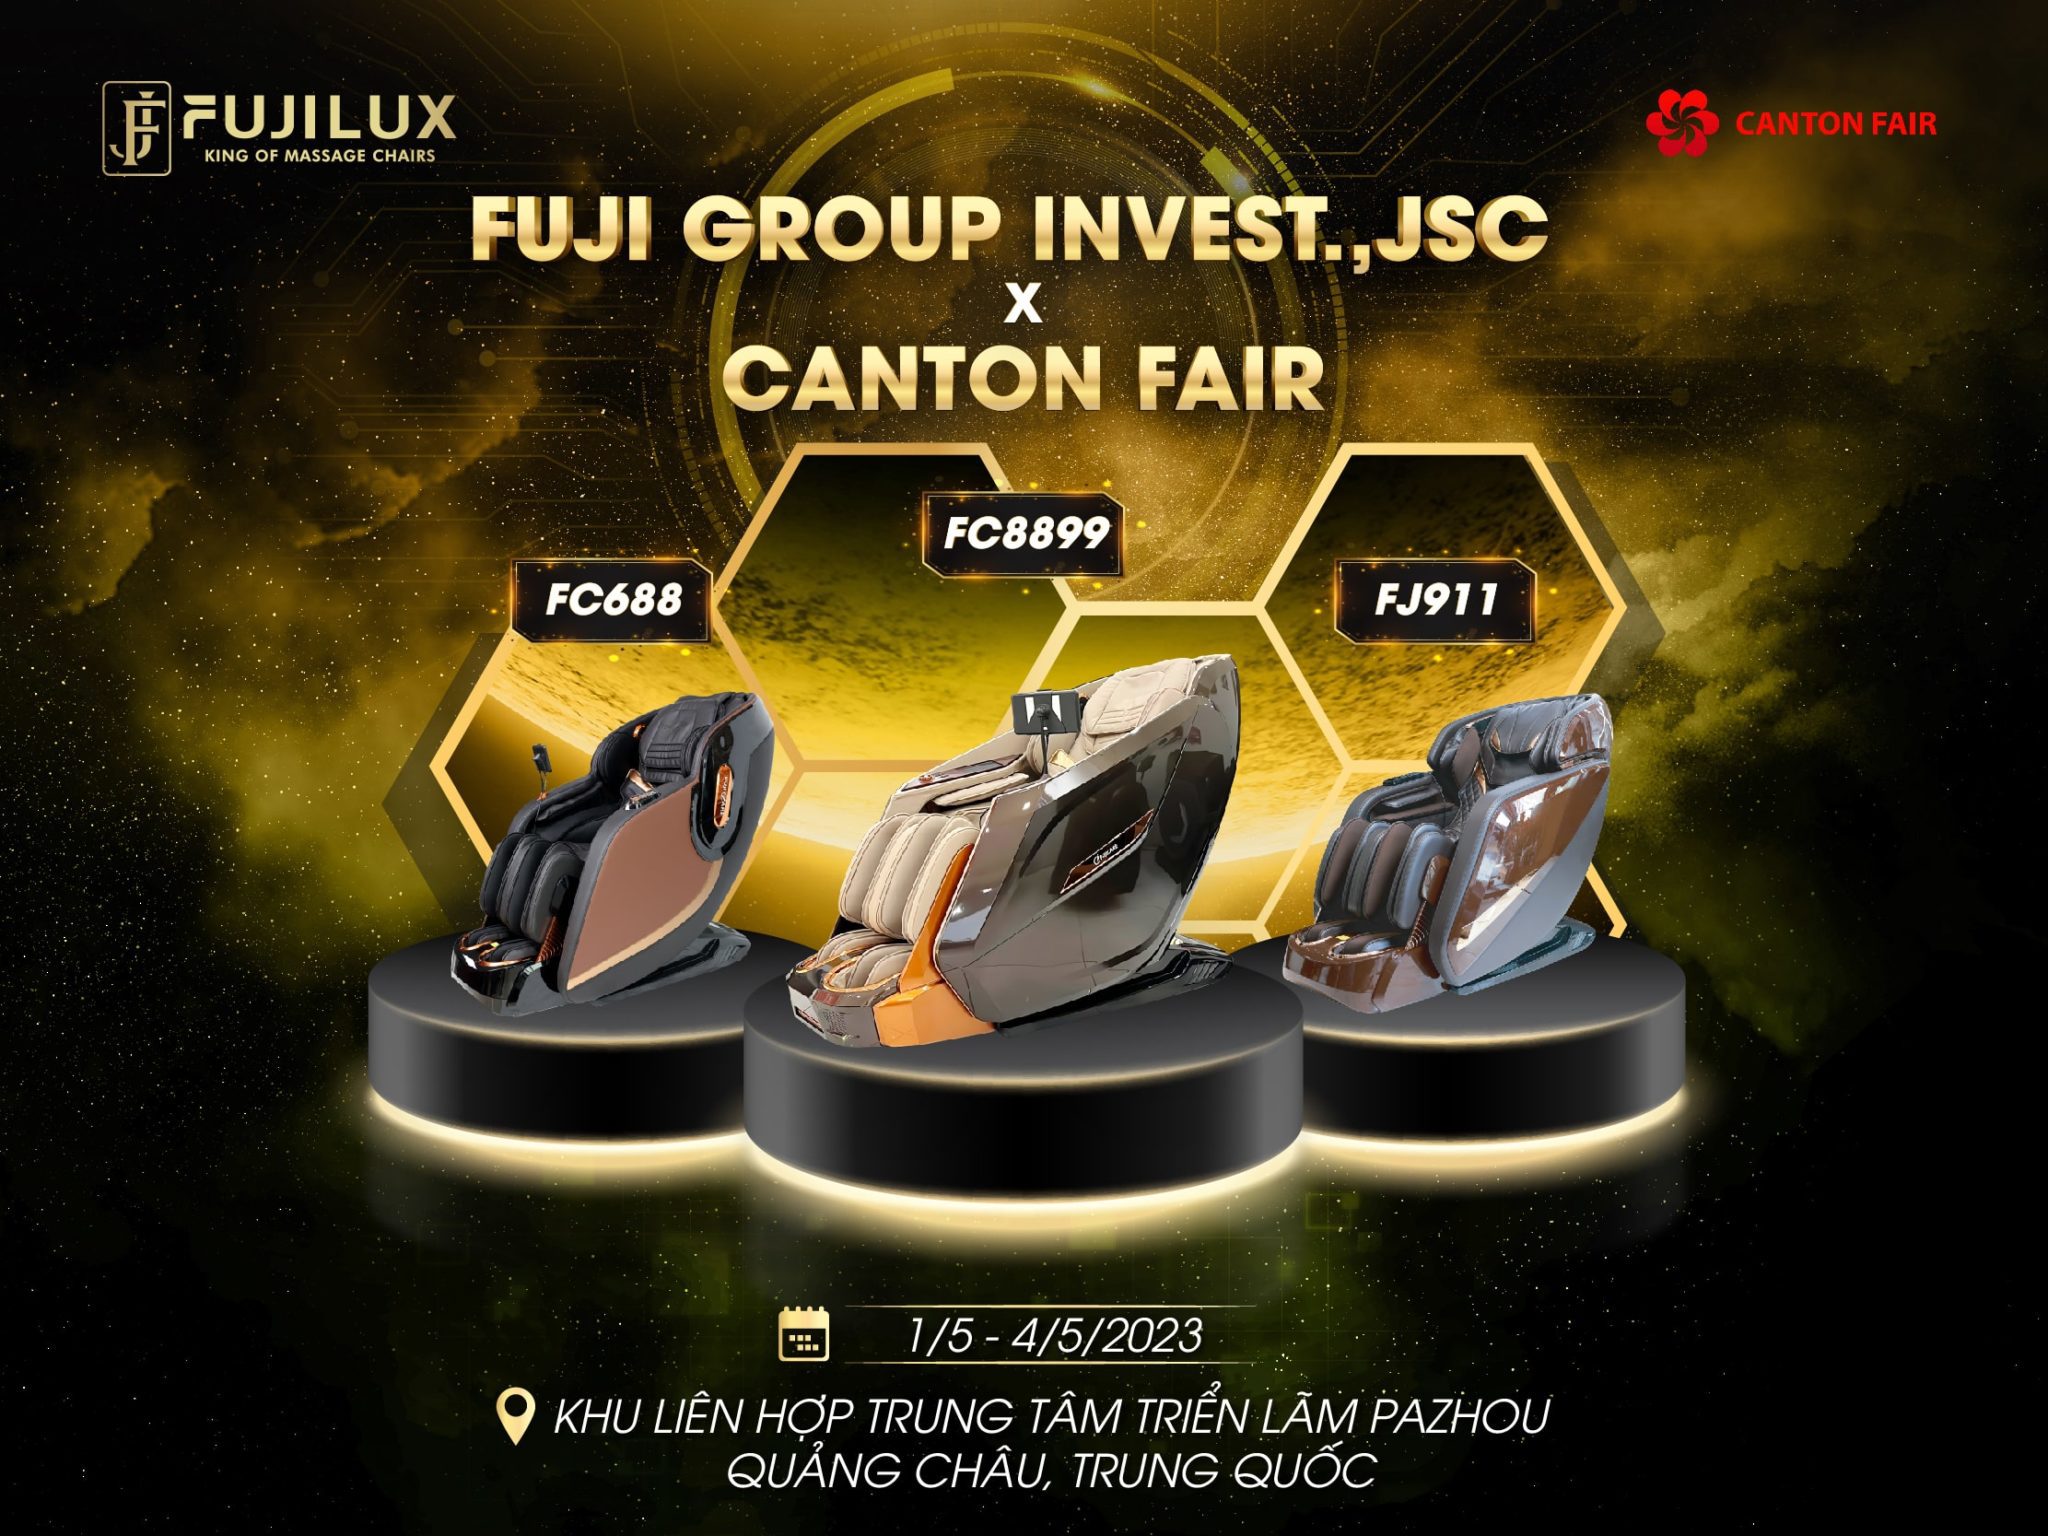 Top 3 sản phẩm ứng dụng công nghệ hiện đại bậc nhất của Fuji Luxury Group mang đến sự kiện Canton Fair 2023